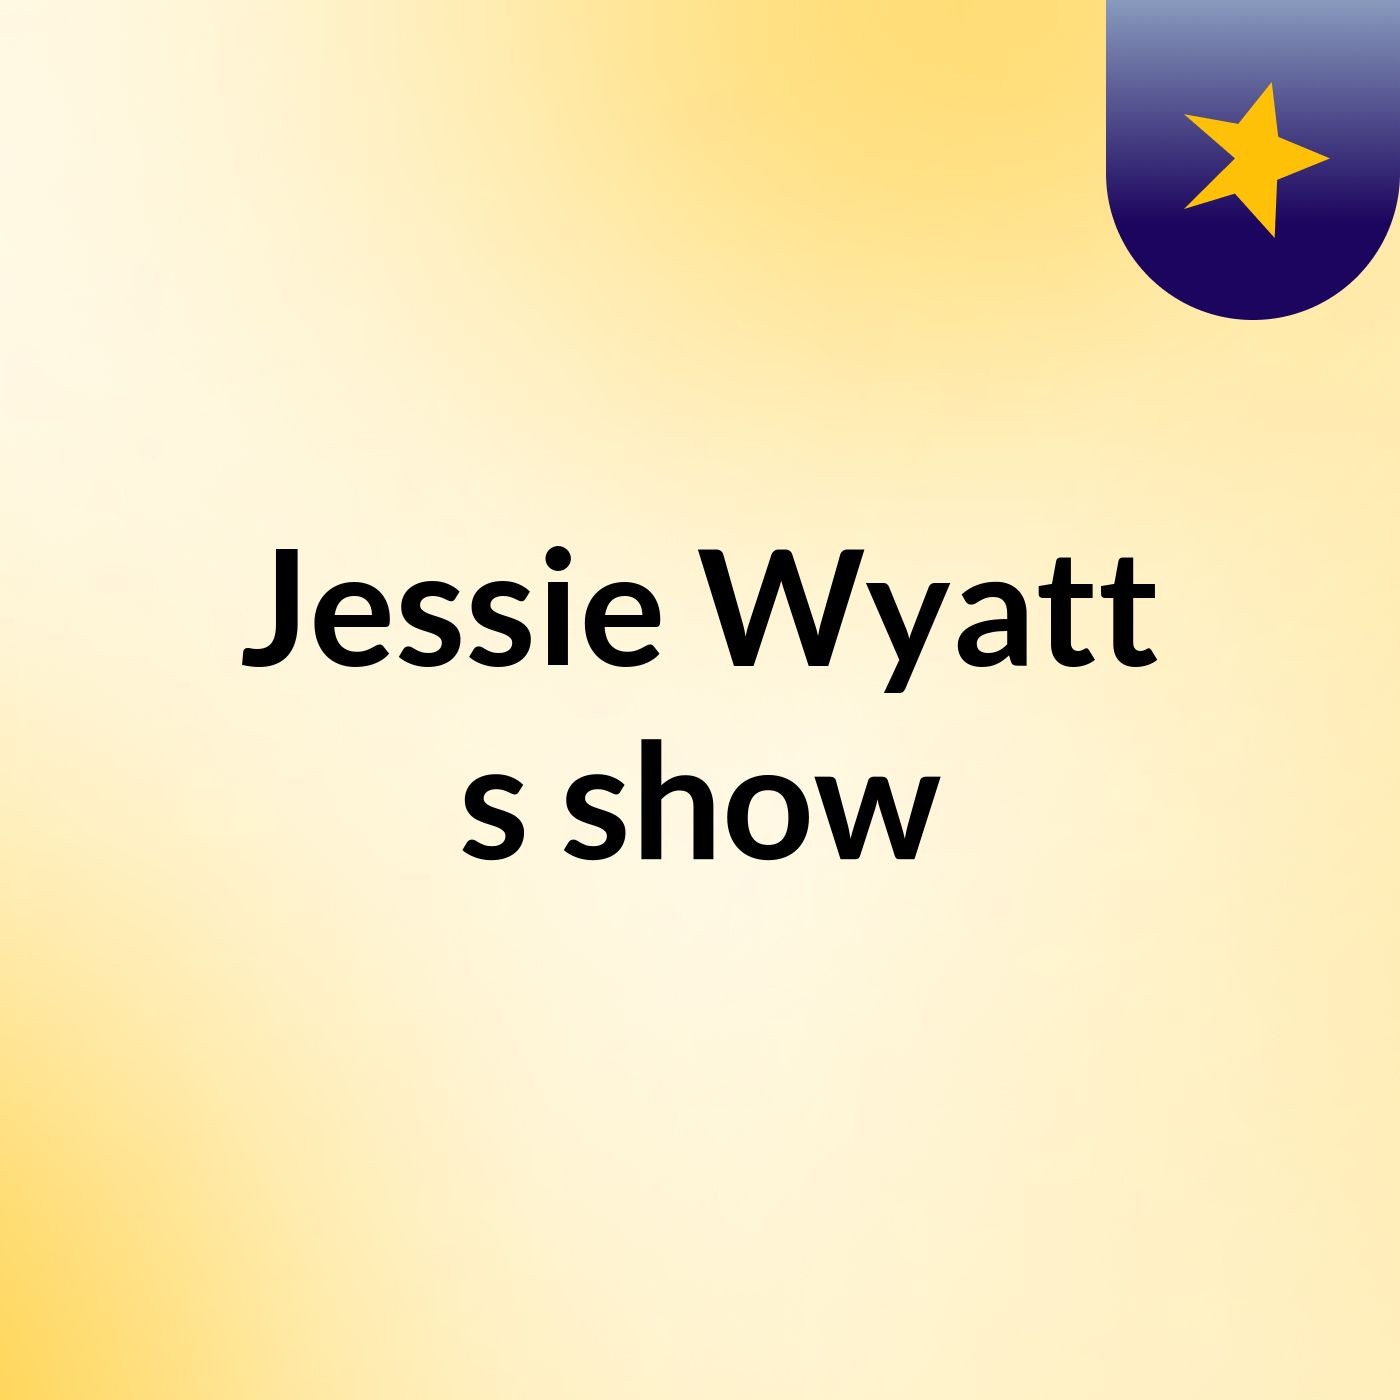 Jessie Wyatt's show